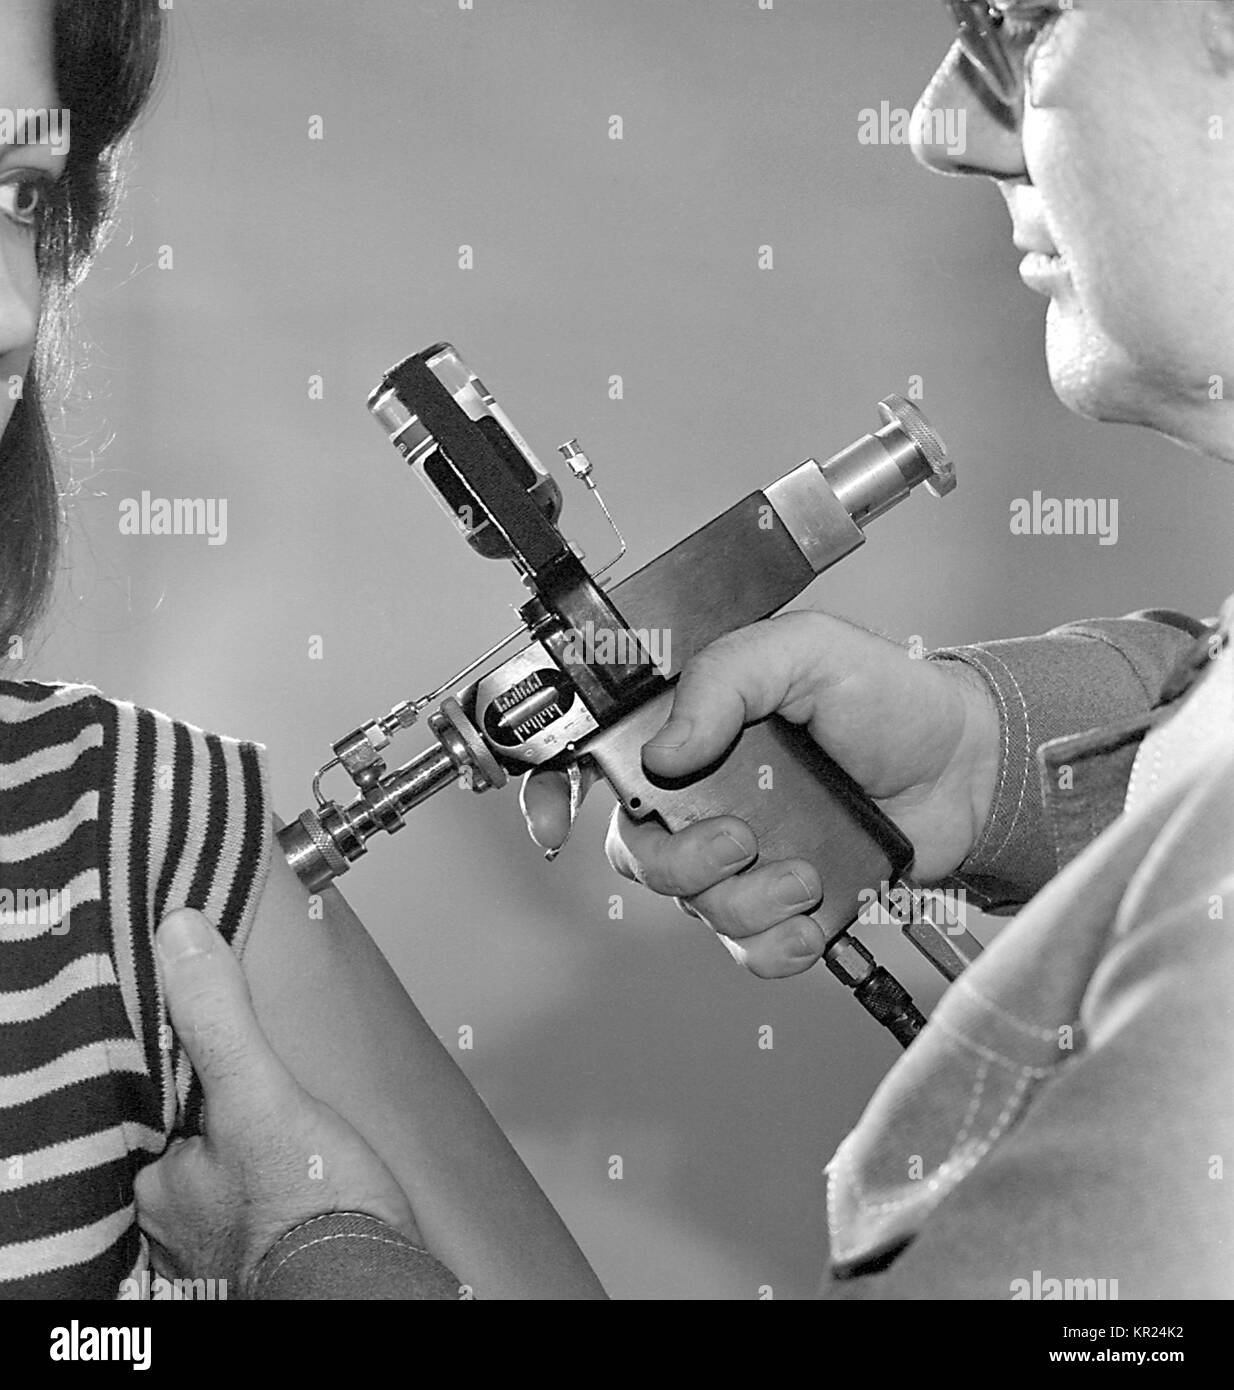 La somministrazione di un vaccino durante il 1976 New Jersey progetto di immunizzazione, per l'influenza A (influenza suina), 1976. IMGSETINF, uso di un iniettore a getto durante il 1976 New Jersey influenza un progetto di immunizzazione. 45 milioni di adulti negli Stati Uniti ha ricevuto un vaccino contenente il A/New Jersey/76 influenzavirus ("influenza suina" virus). Immagine cortesia CDC/Robert E. Bates. Foto Stock